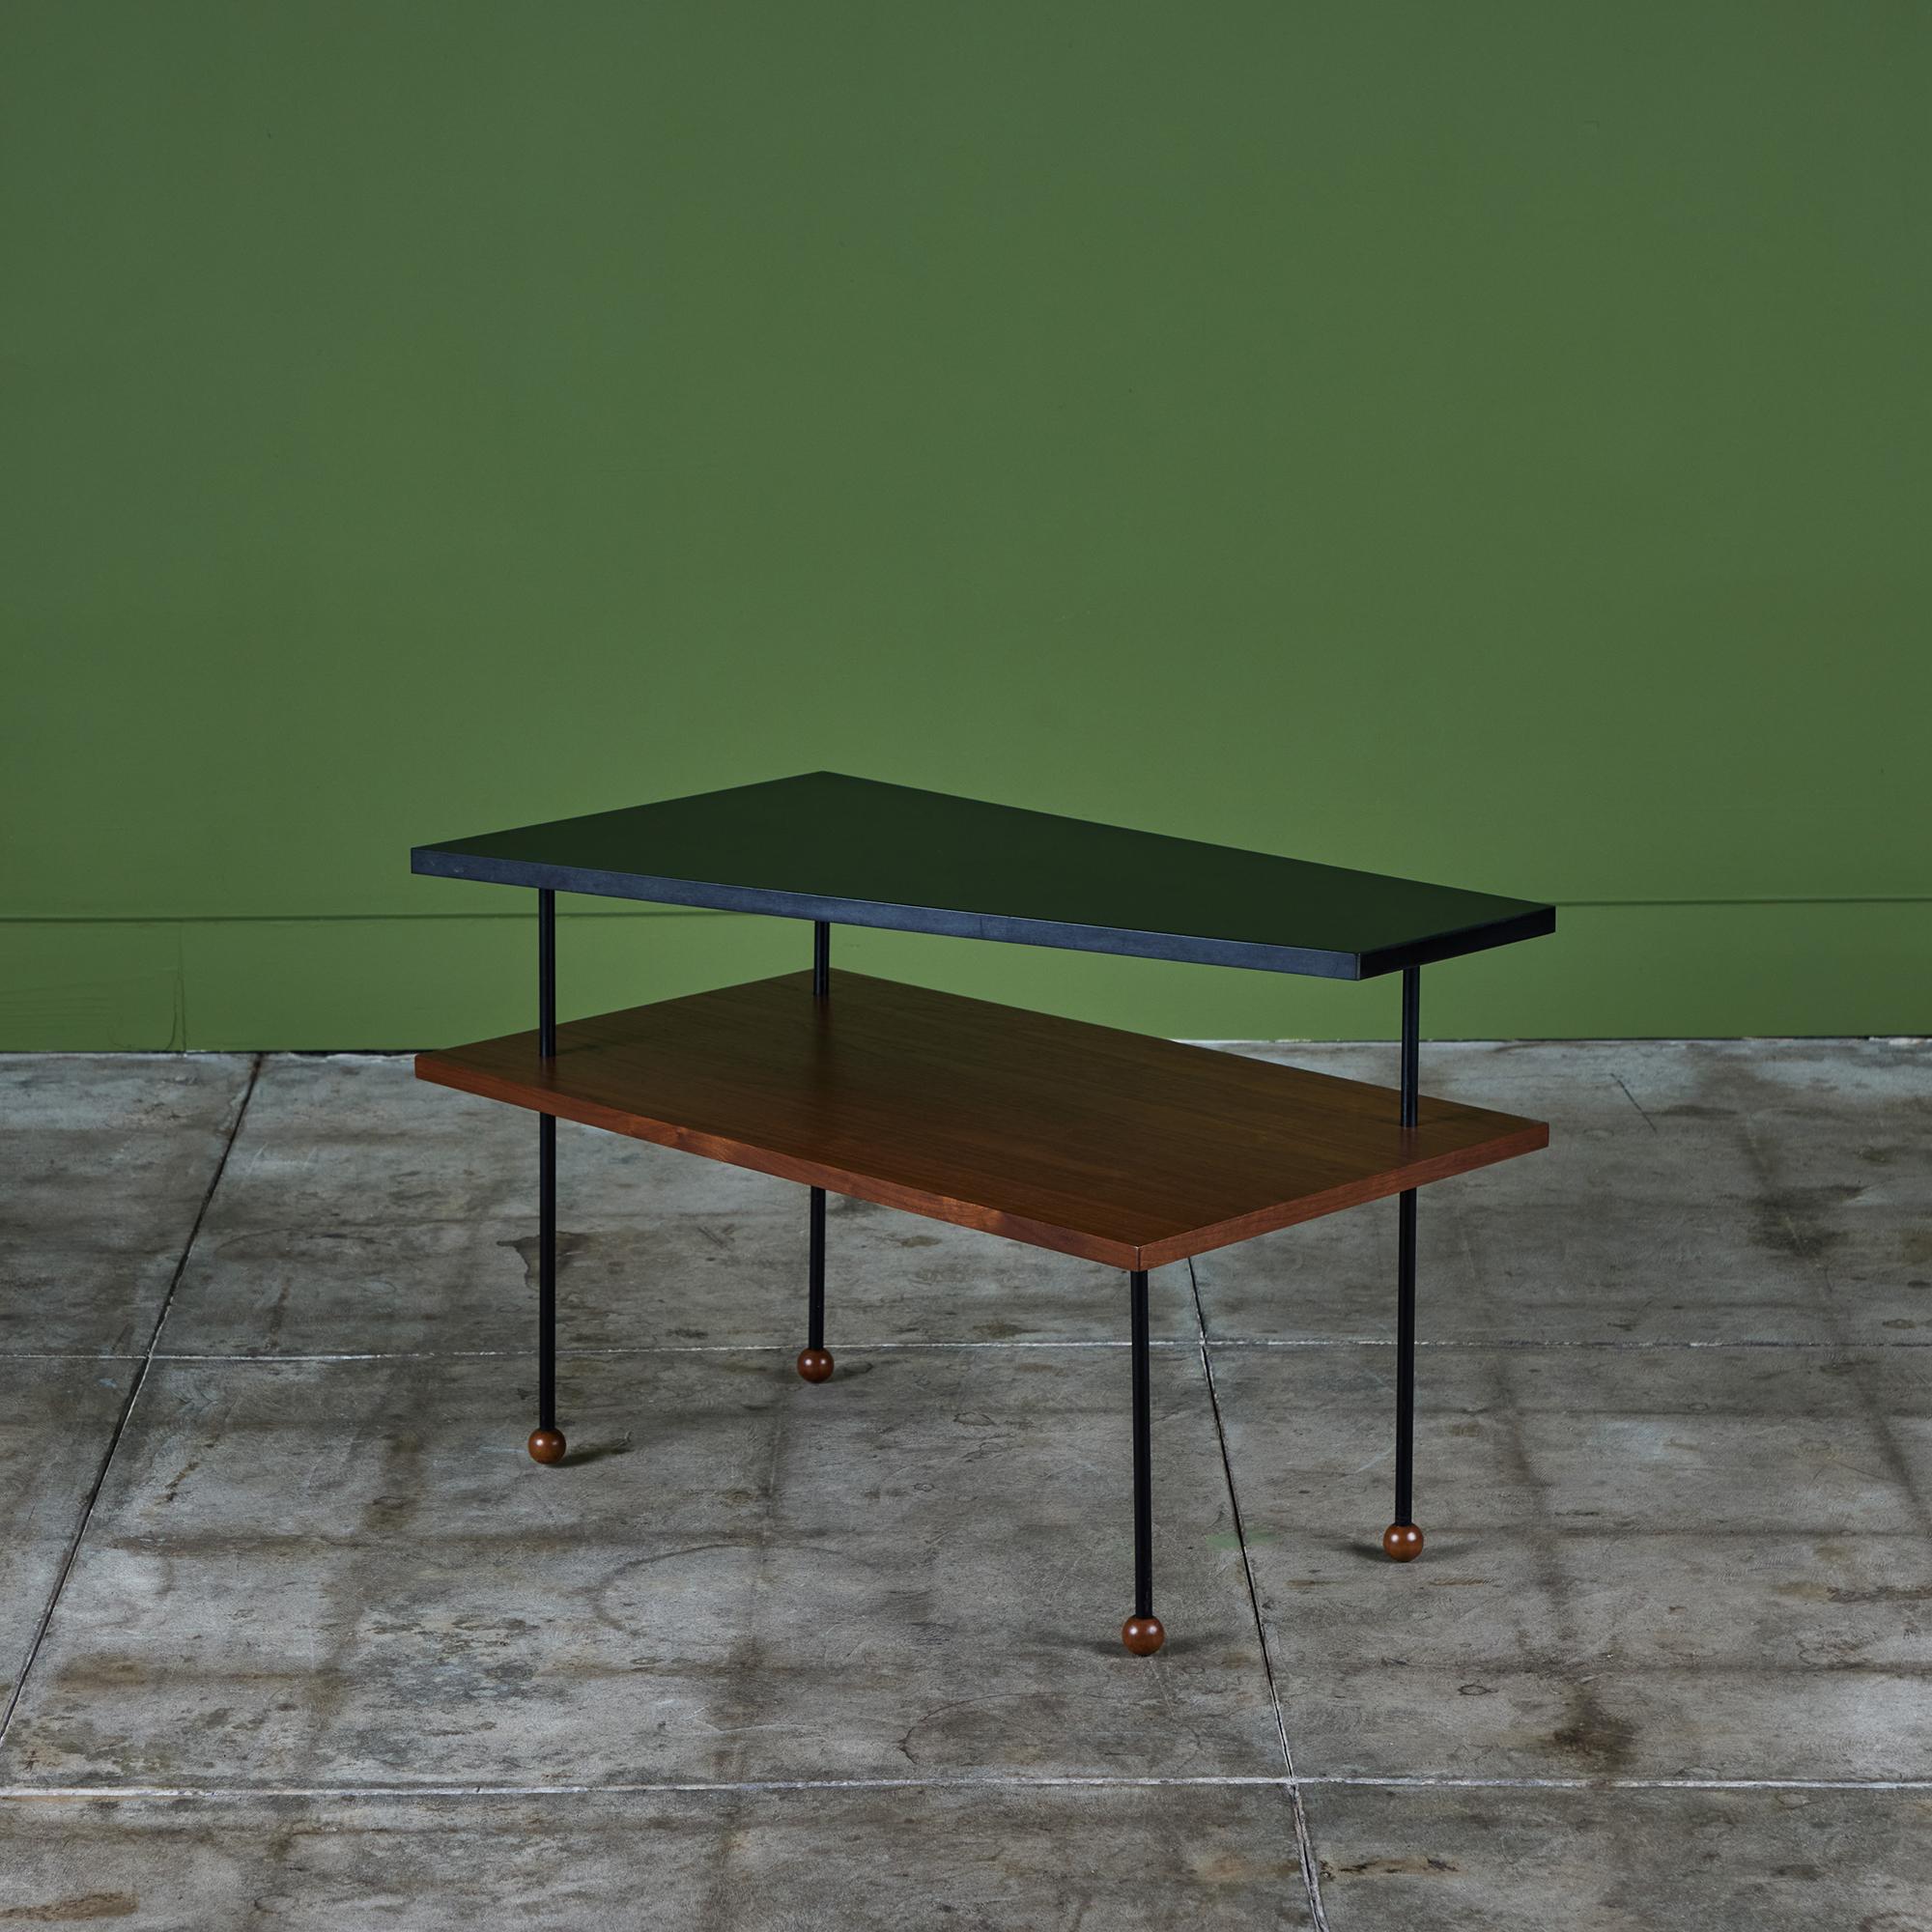 Rare table d'appoint Greta Grossman pour Glenn of California, c.1950s. La table comporte une étagère asymétrique en stratifié noir qui repose sur une étagère rectangulaire en noyer. Les étagères sont maintenues par quatre fines tiges en métal peint